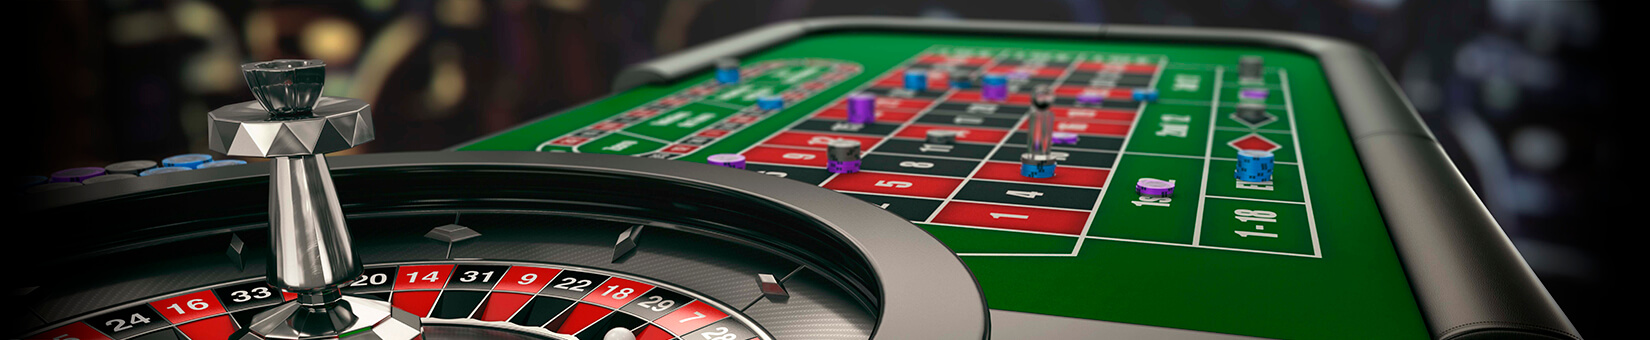 Ruleta de decisiones poker en casa - 46284